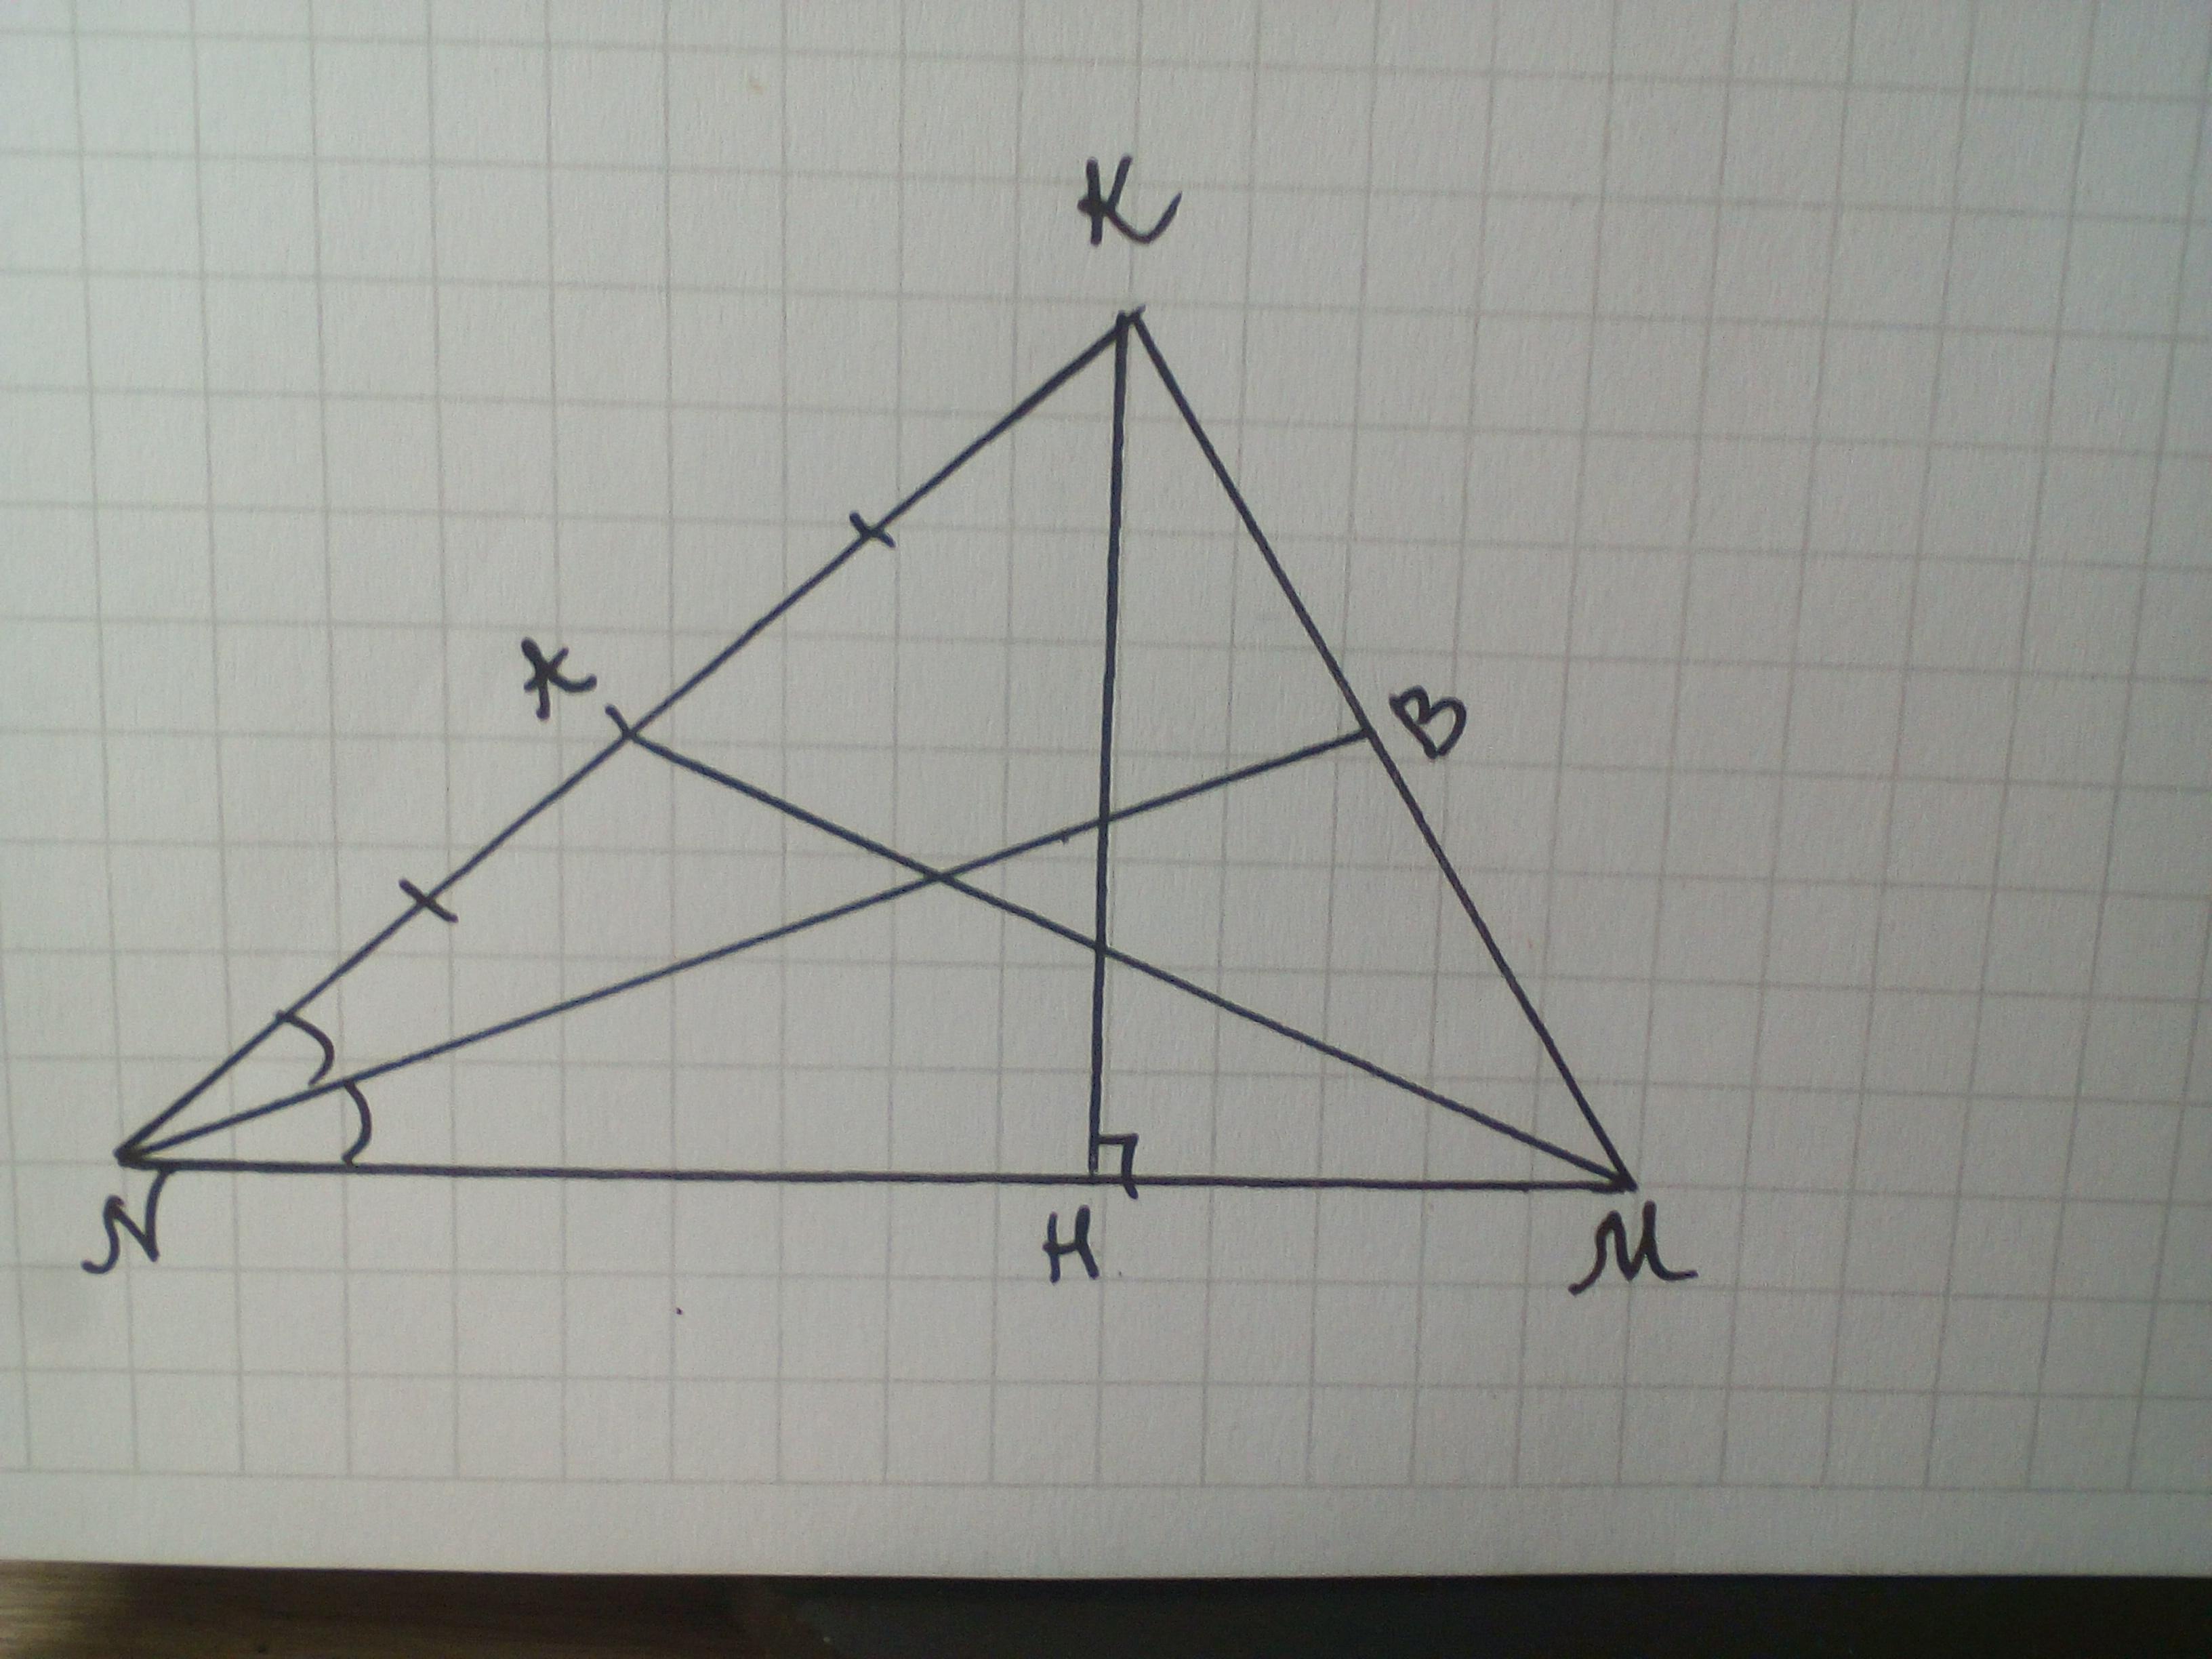 Равнобедренный тупоугольный треугольник авс. Медиана остроугольного треугольника. Медиана тупоугольного треугольника. Биссектриса тупоугольного треугольника. Начертить остроугольный треугольник ABC..